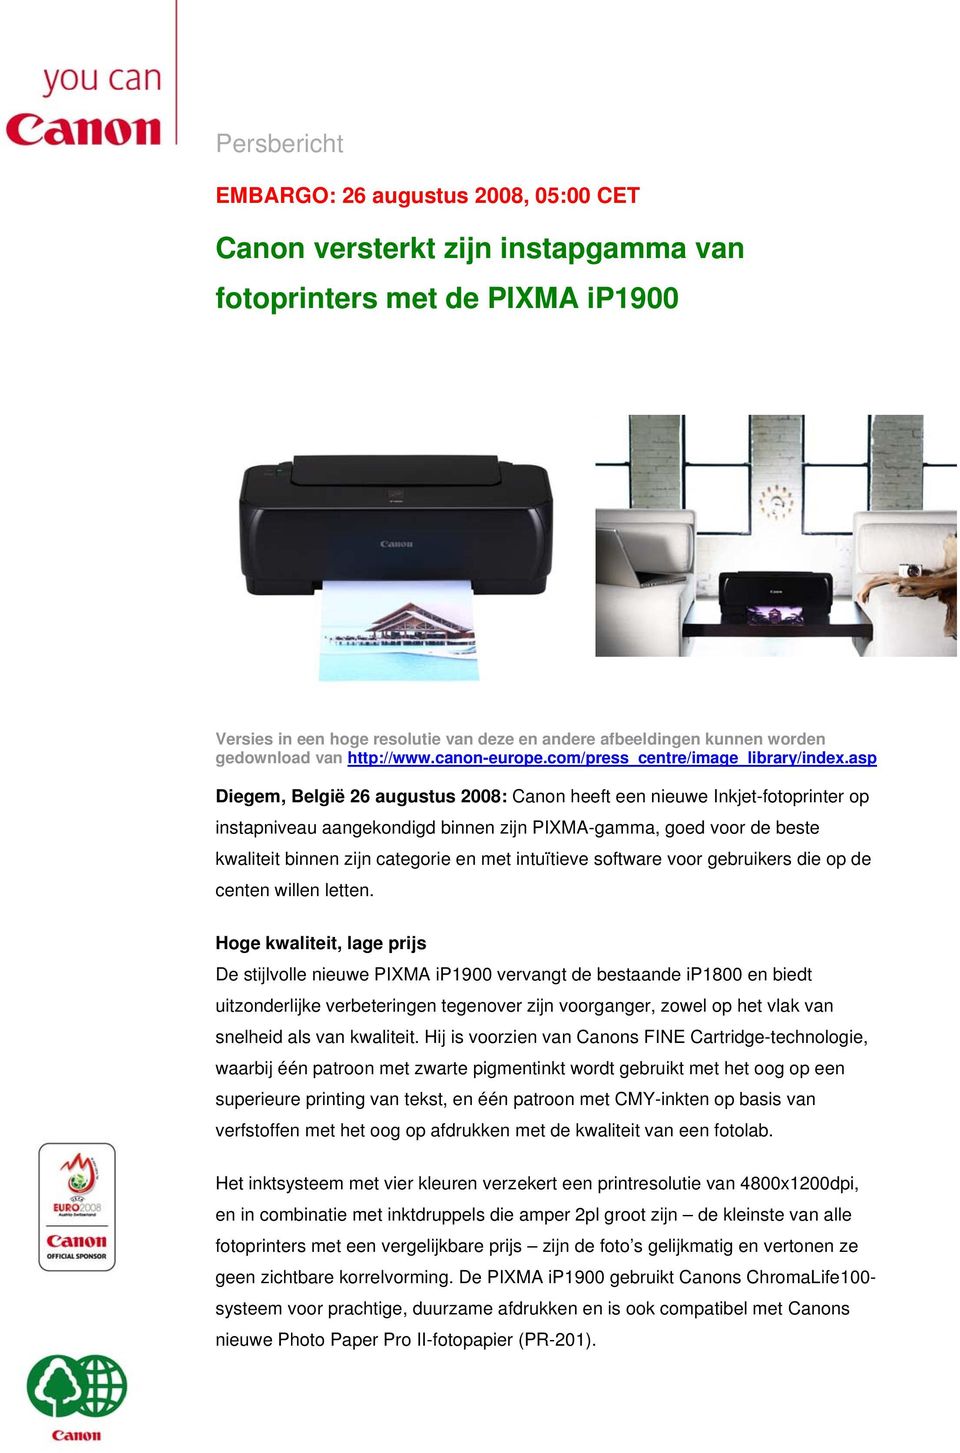 asp Diegem, België 26 augustus 2008: Canon heeft een nieuwe Inkjet-fotoprinter op instapniveau aangekondigd binnen zijn PIXMA-gamma, goed voor de beste kwaliteit binnen zijn categorie en met